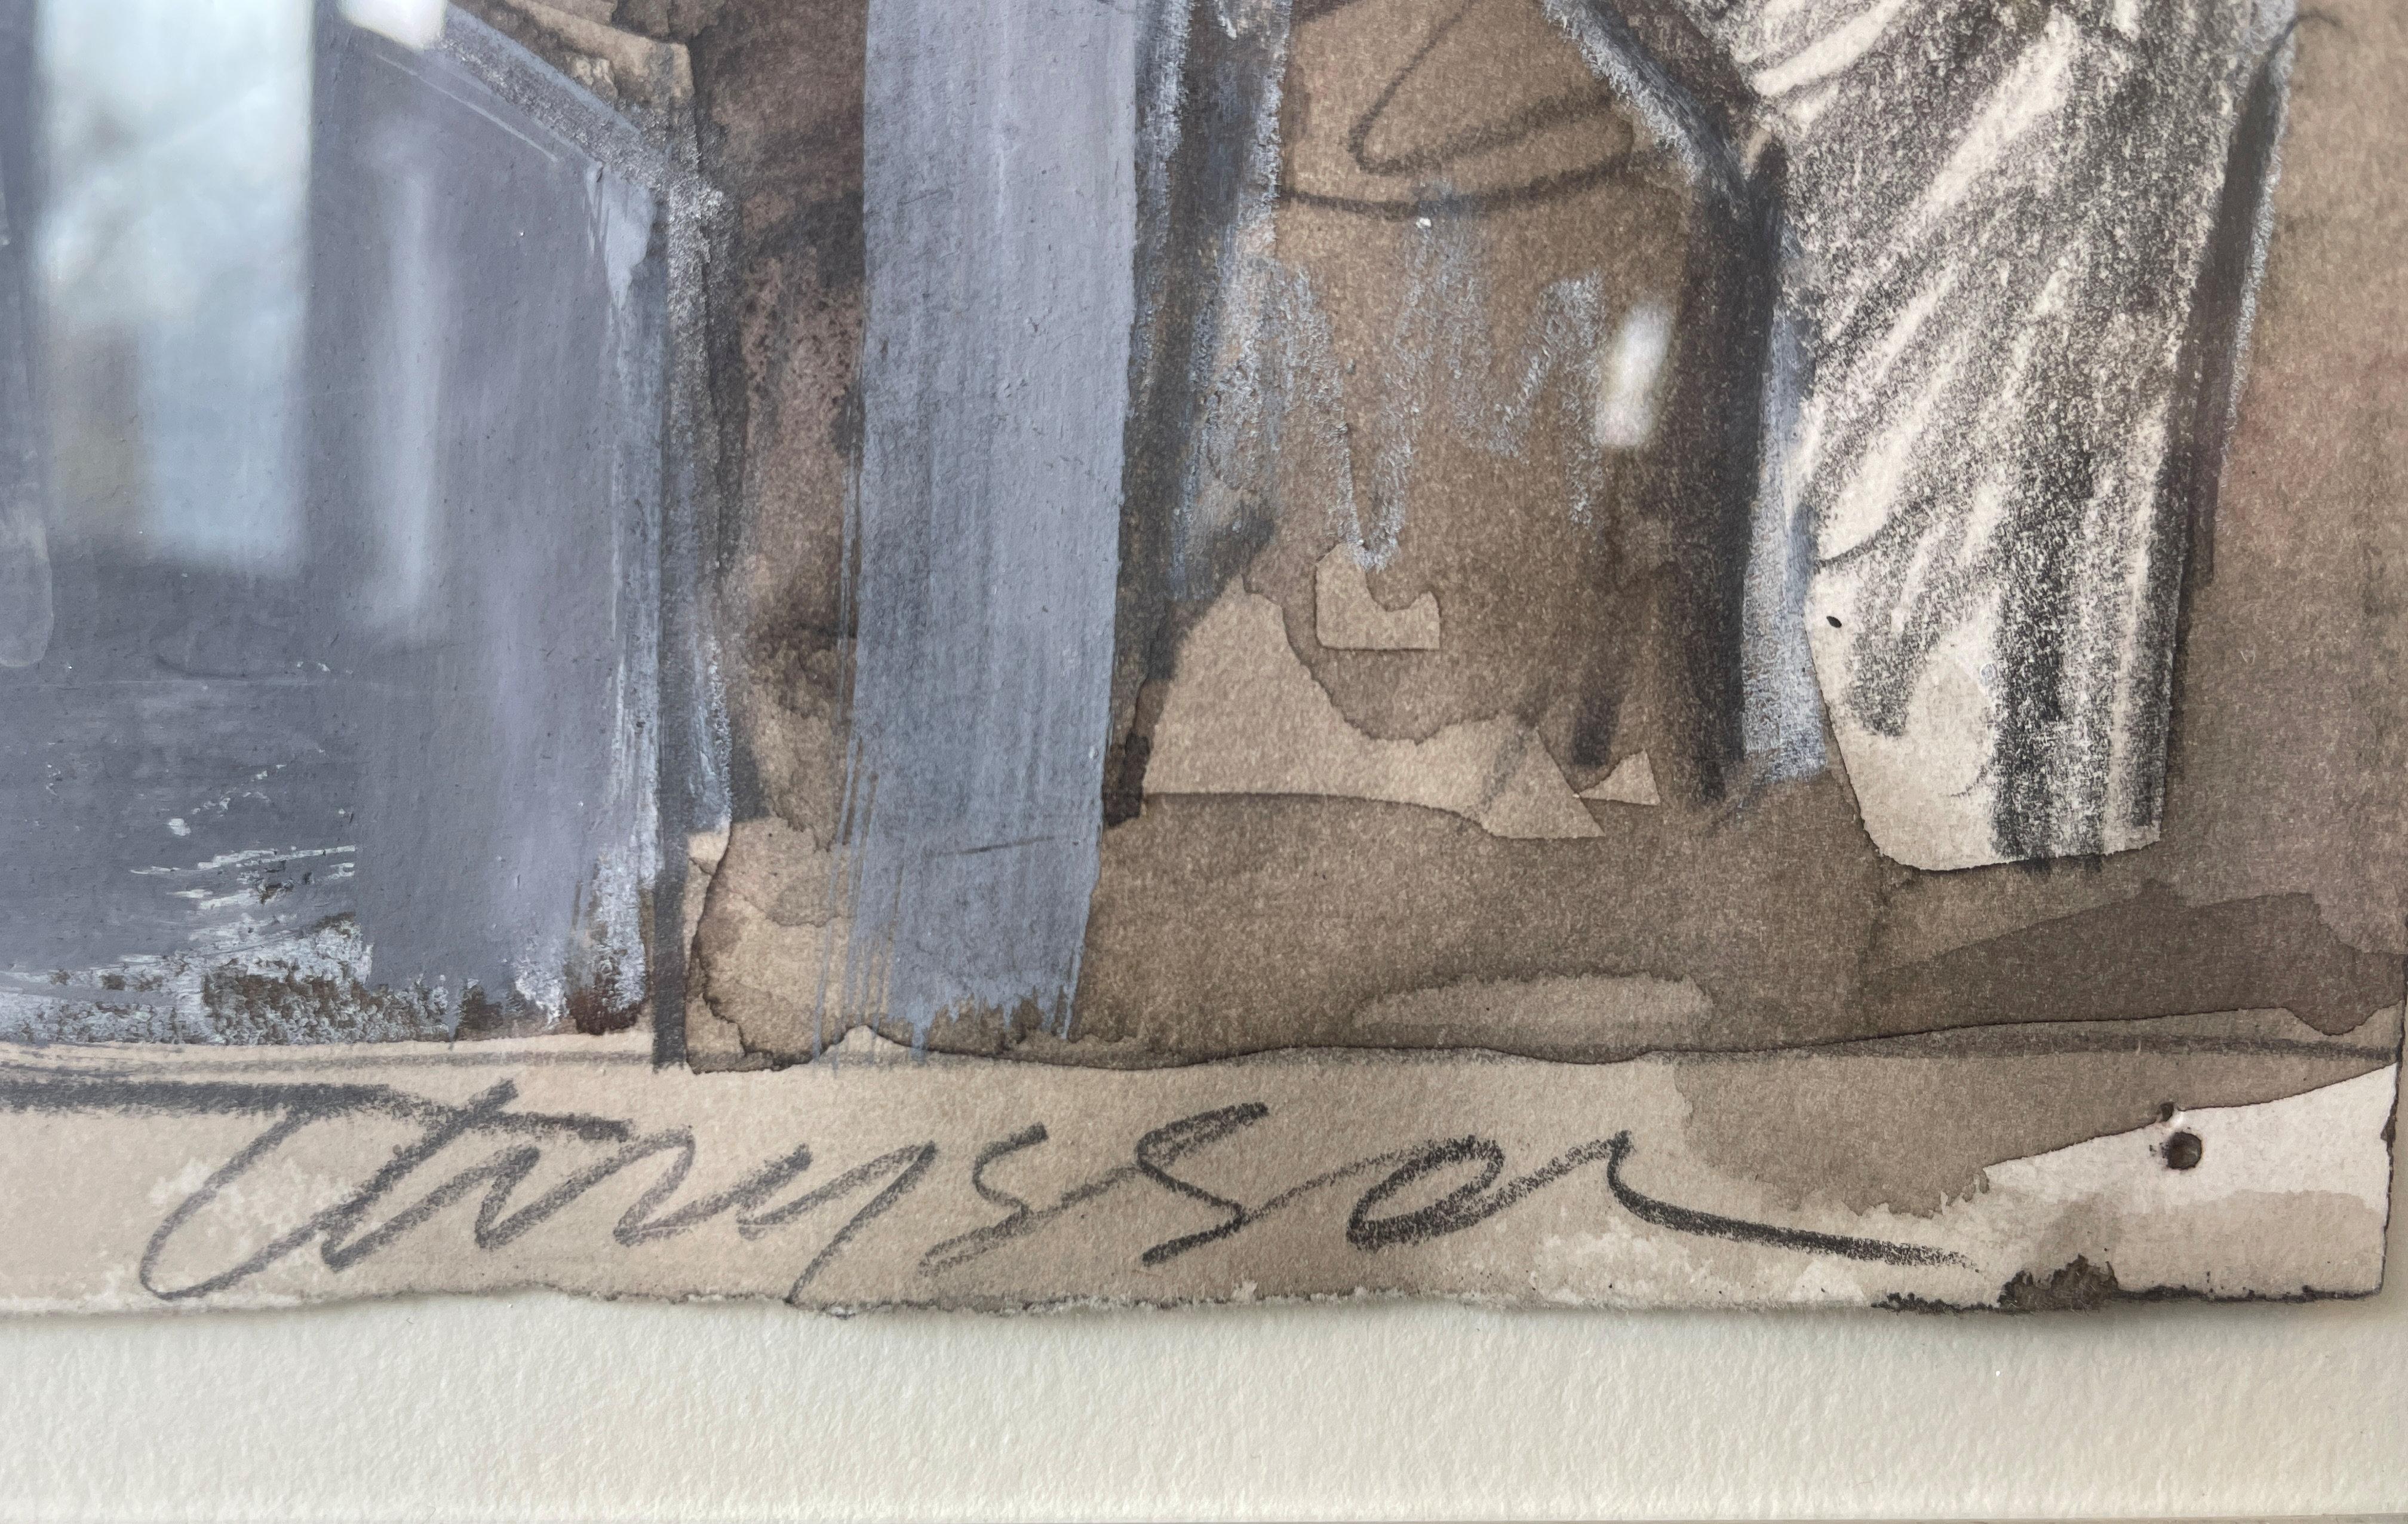 Chryssa
Wiederholung
Signiert unten rechts; rückseitig betitelt
Gouache, Aquarell, Holzkohle und Graphit auf Papier
15 x 11 Zoll

Geboren und ausgebildet in Athen, Griechenland, wurde Vardea Chryssa, die beruflich als Chryssa bekannt ist,